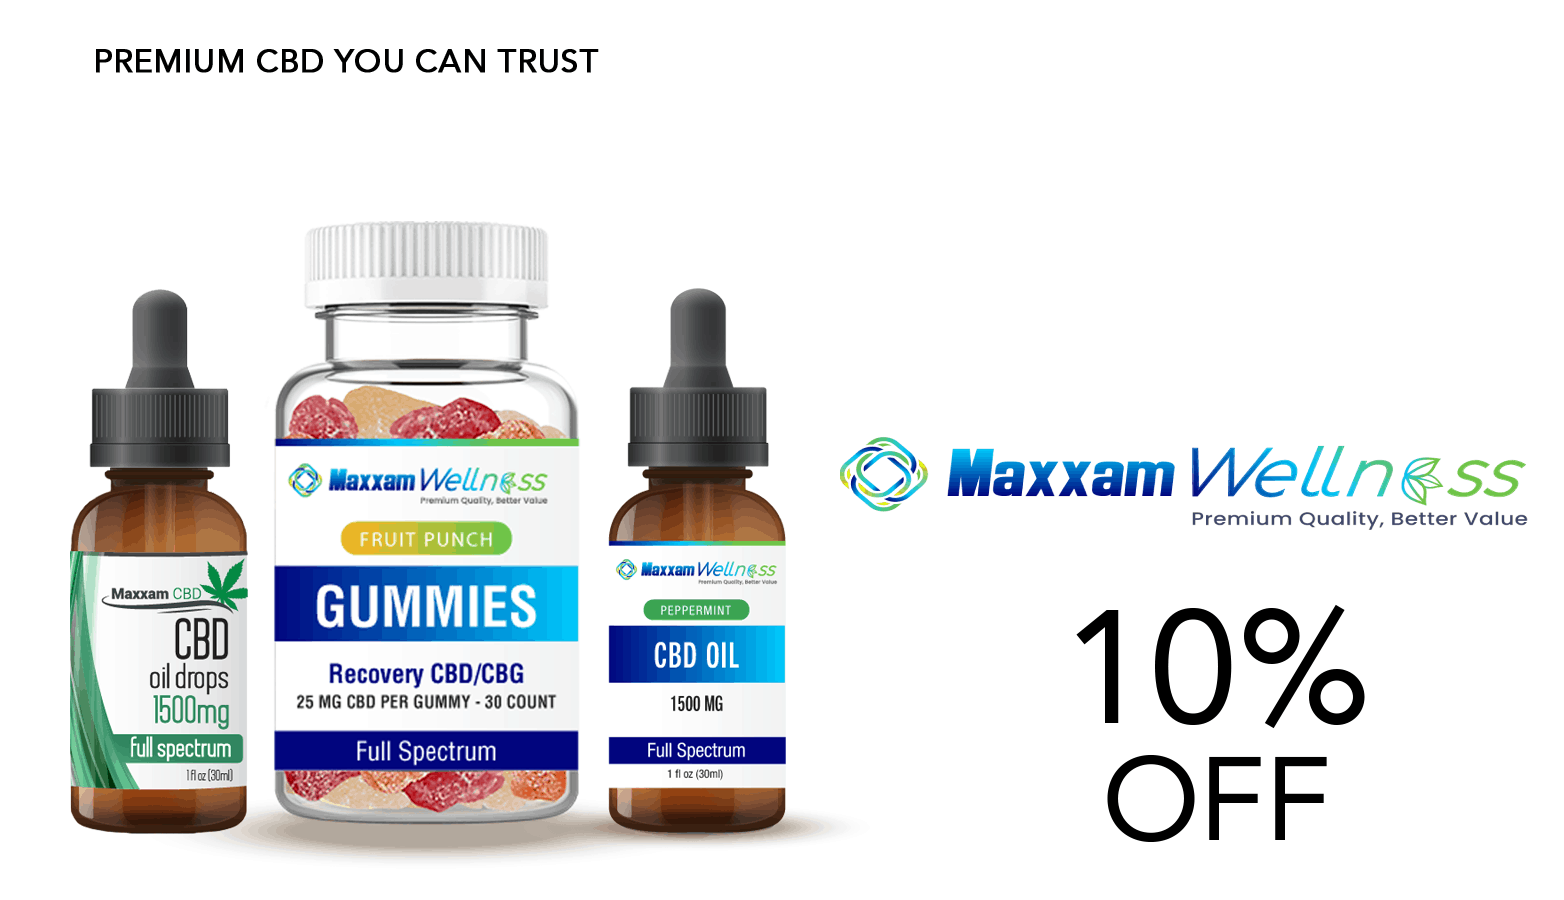 Maxxam Wellness CBD Coupon Code Offer Website